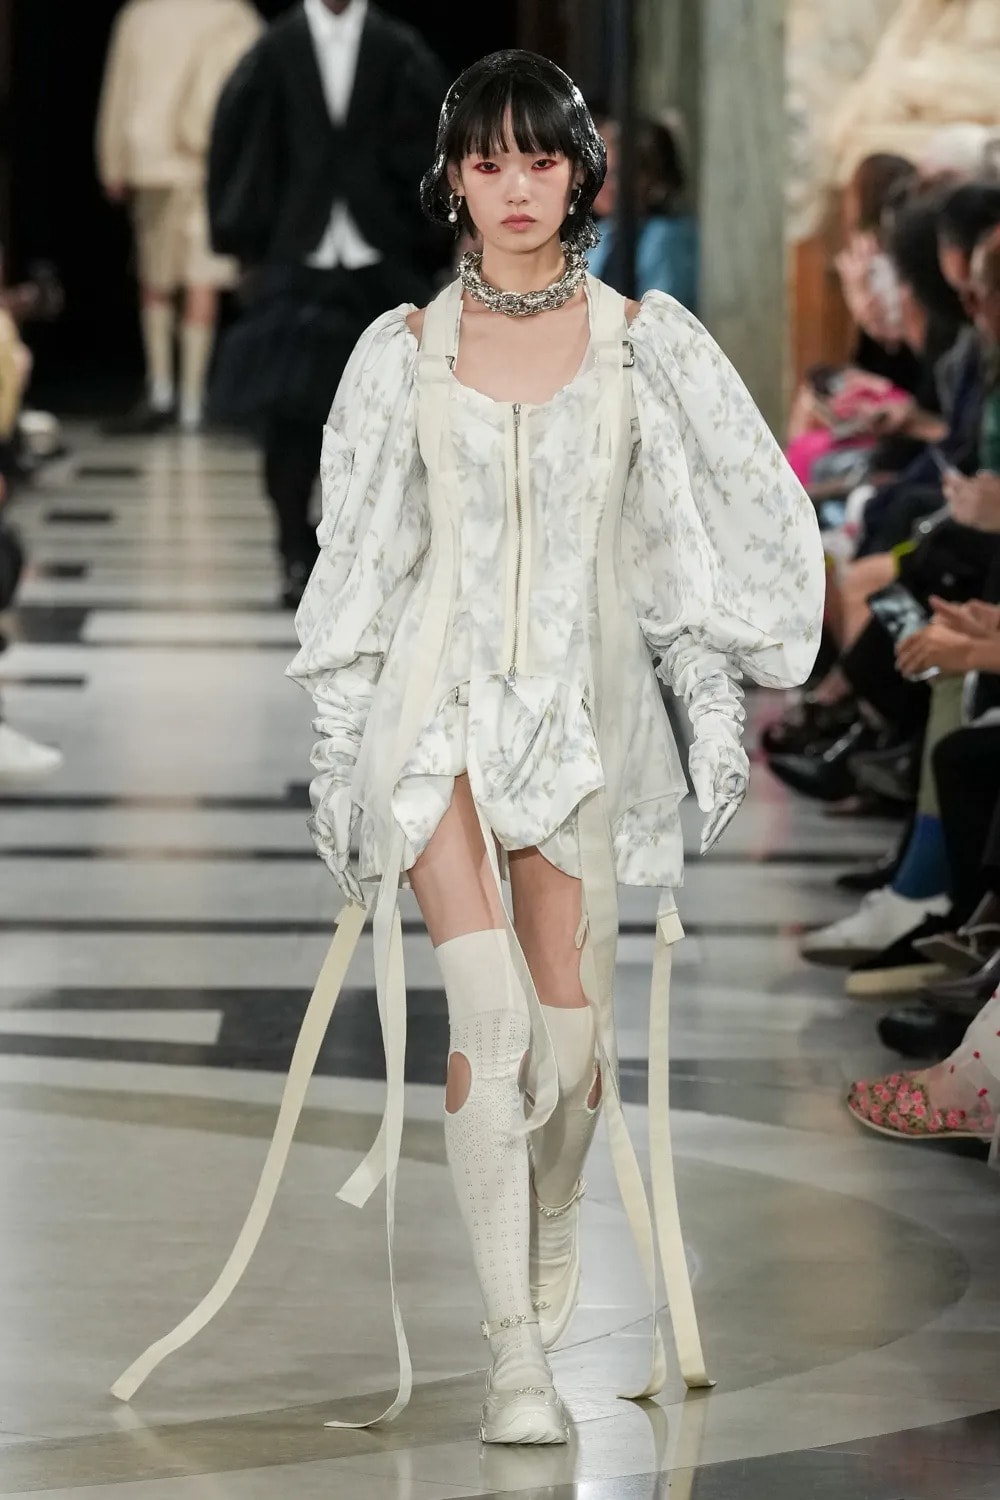 시몬 로샤가 브랜드 최초의 남성복 컬렉션을 공개했다, 진주, 프릴, 시몬로샤, 런던 패션위크